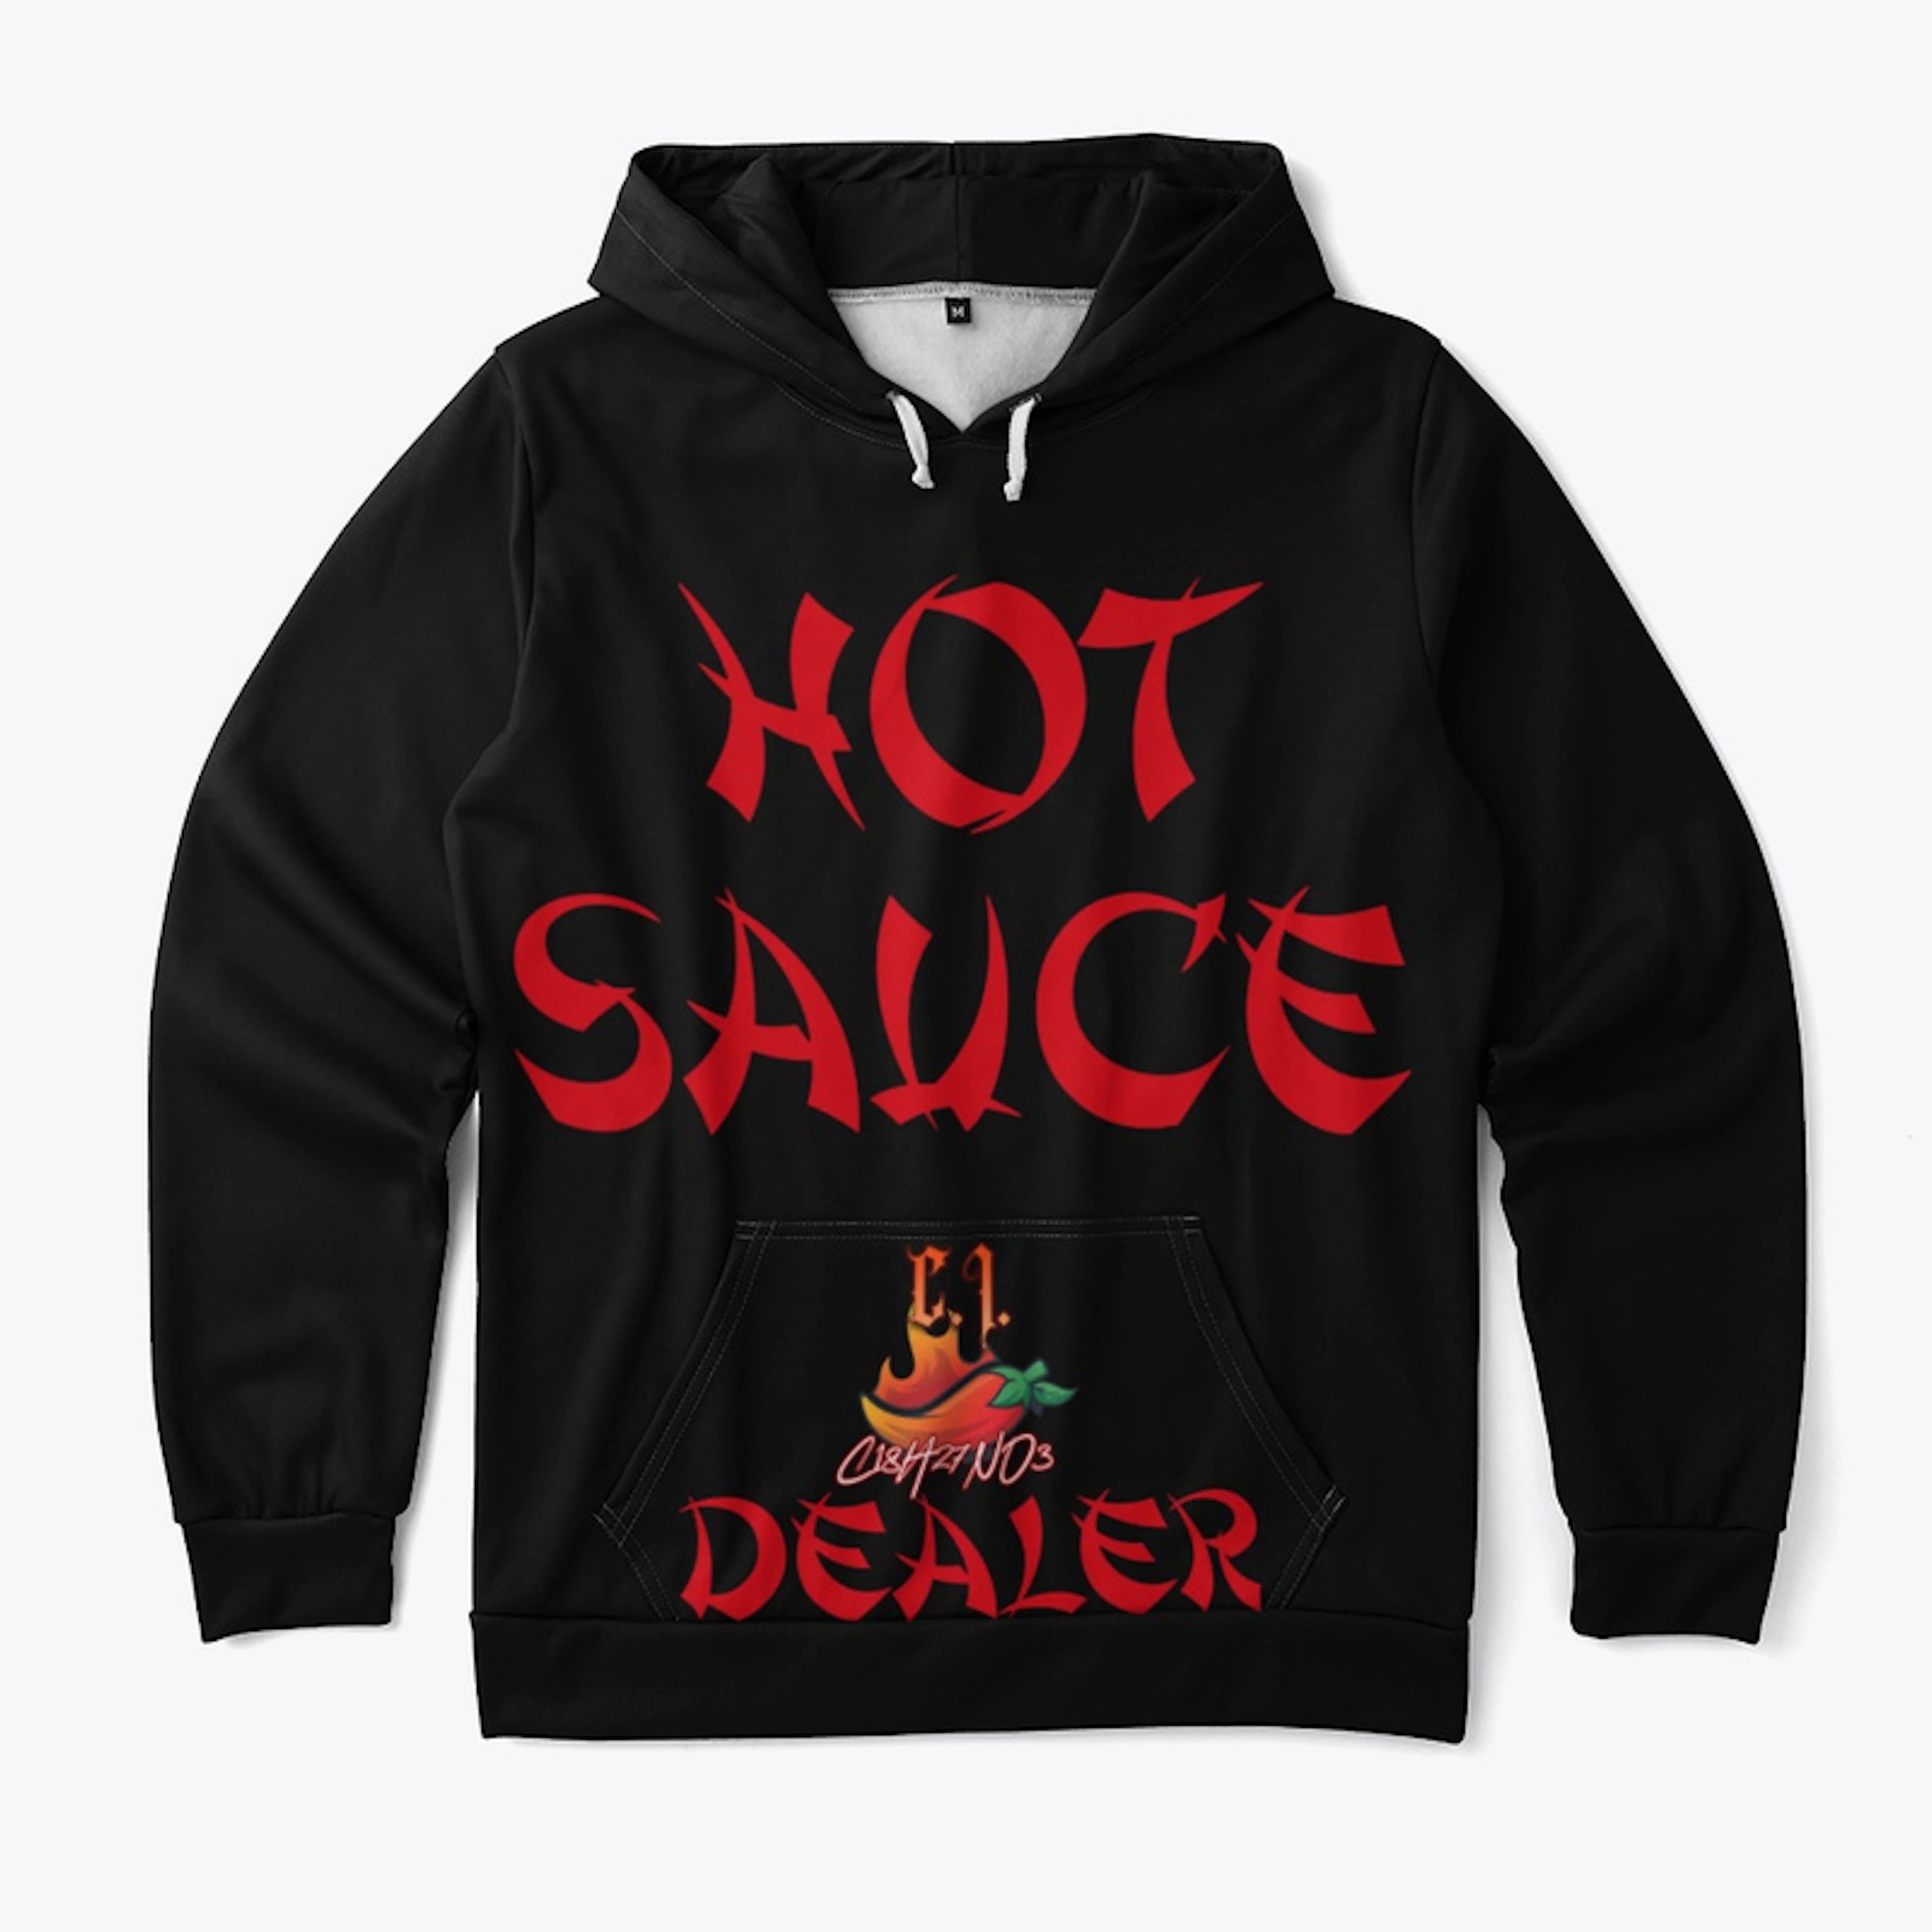 Hot Sauce Dealer